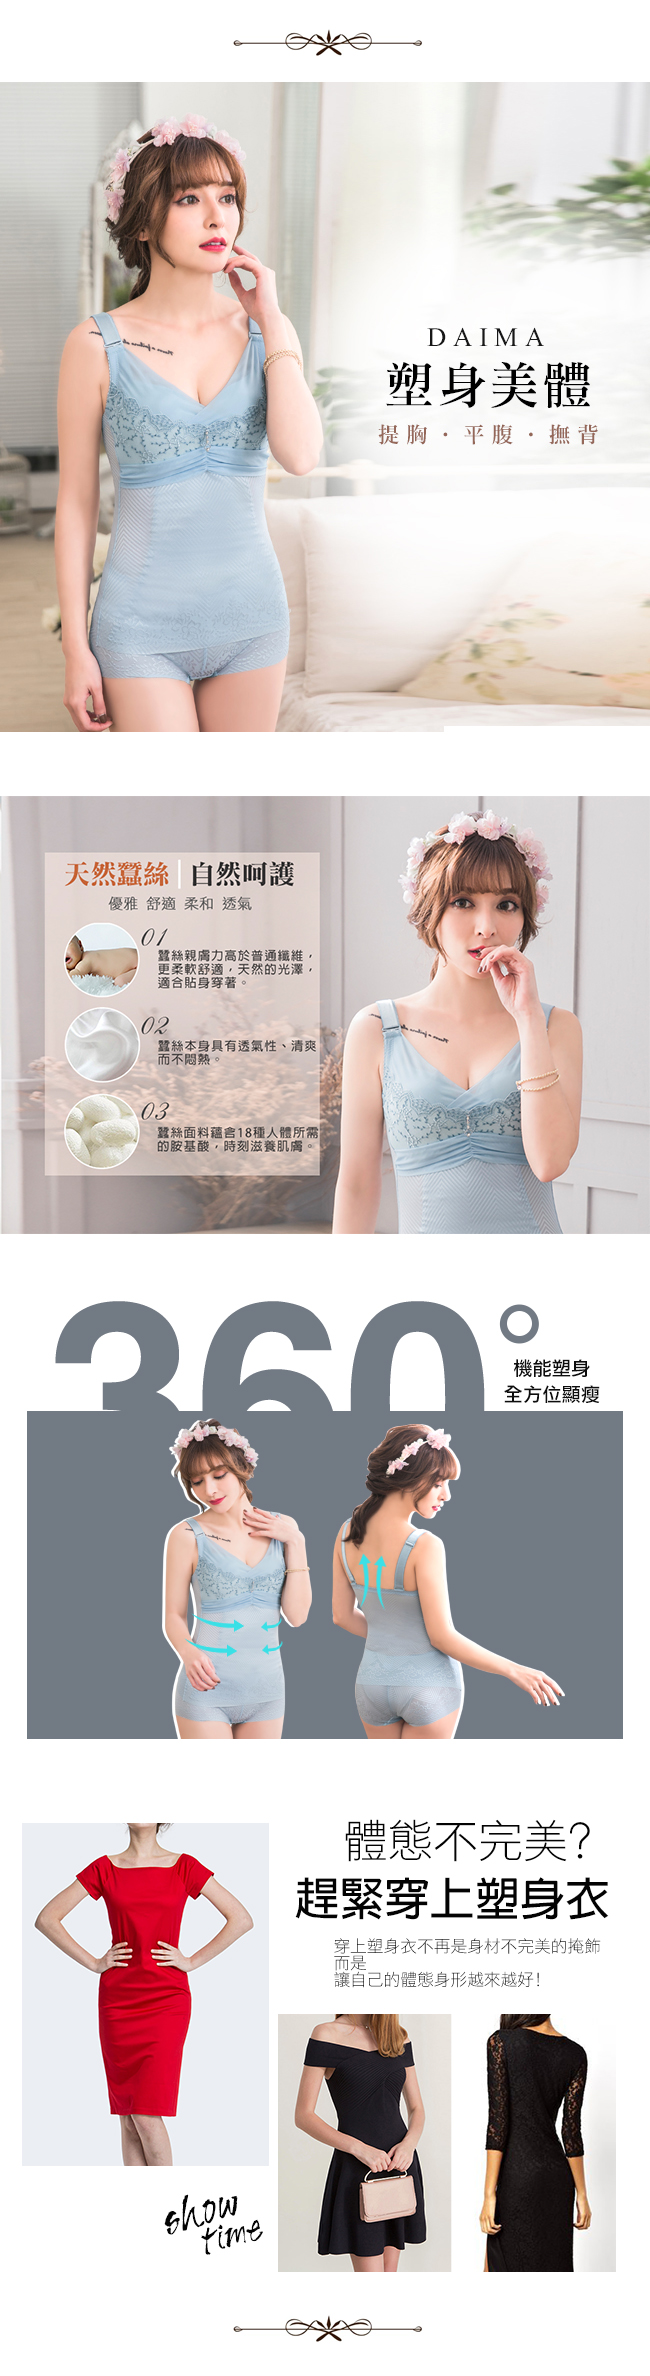 無鋼圈420D蠶絲‧魅力爆乳馬甲塑身衣(黑色)【Daima黛瑪】